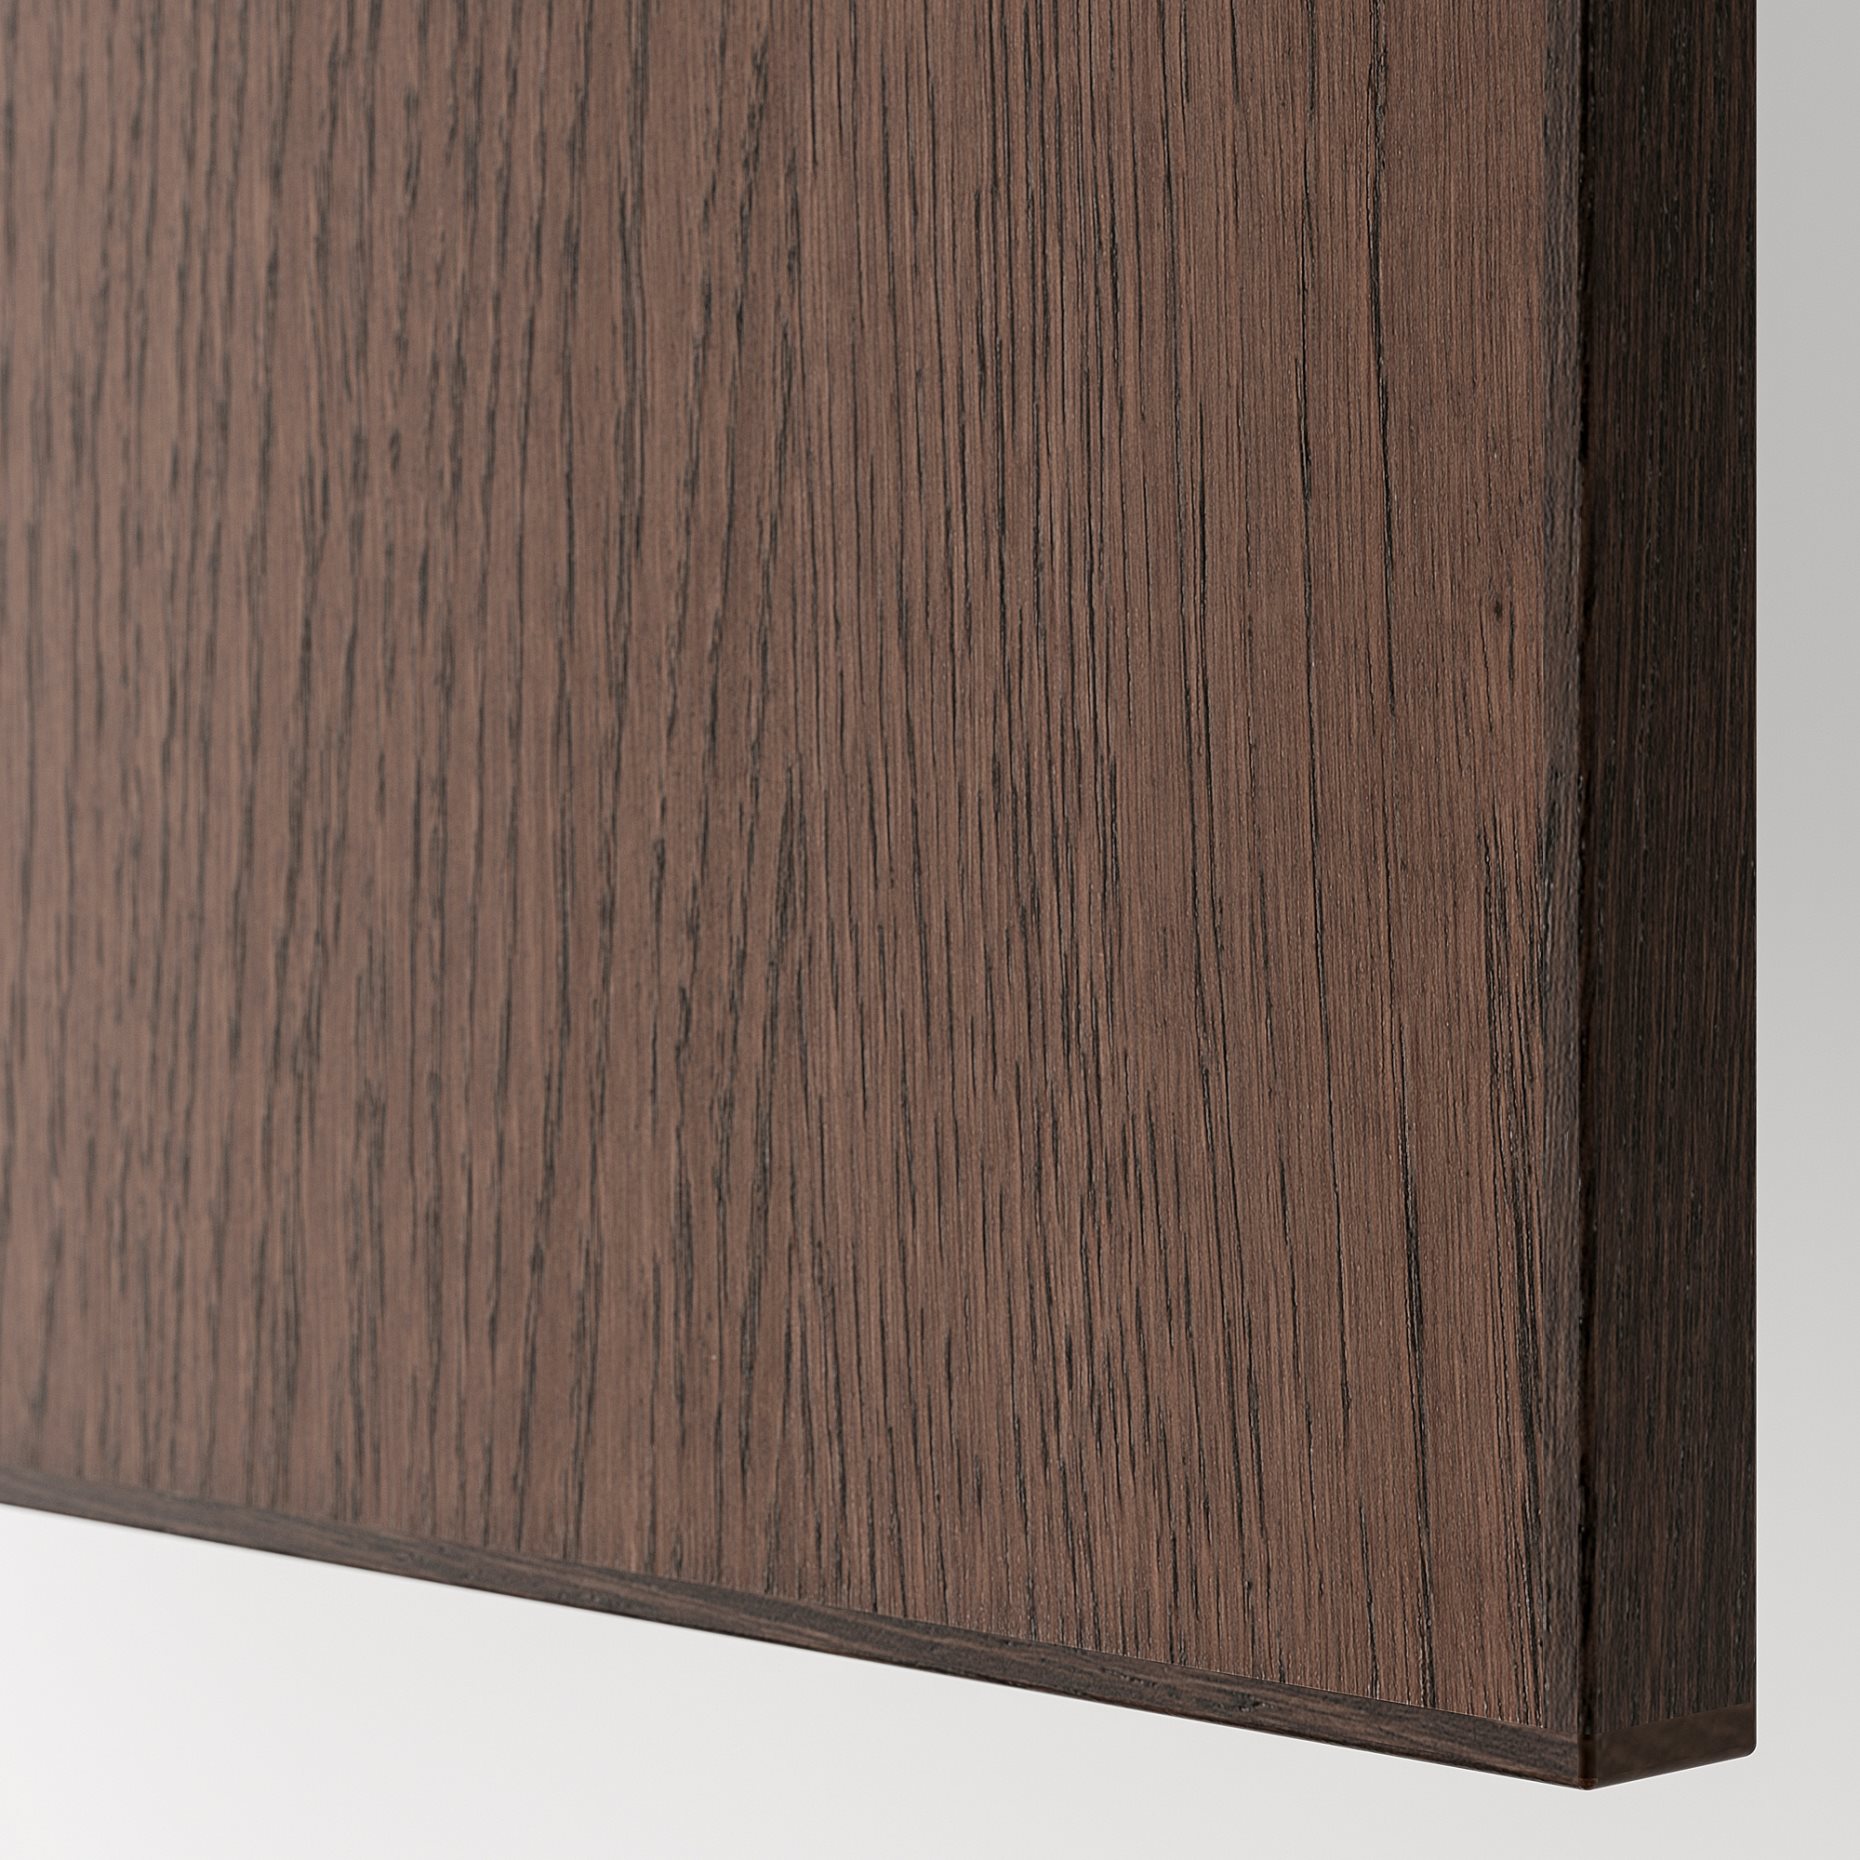 SINARP, 2-piece door for corner base cabinet set, 25x80 cm, 804.041.63